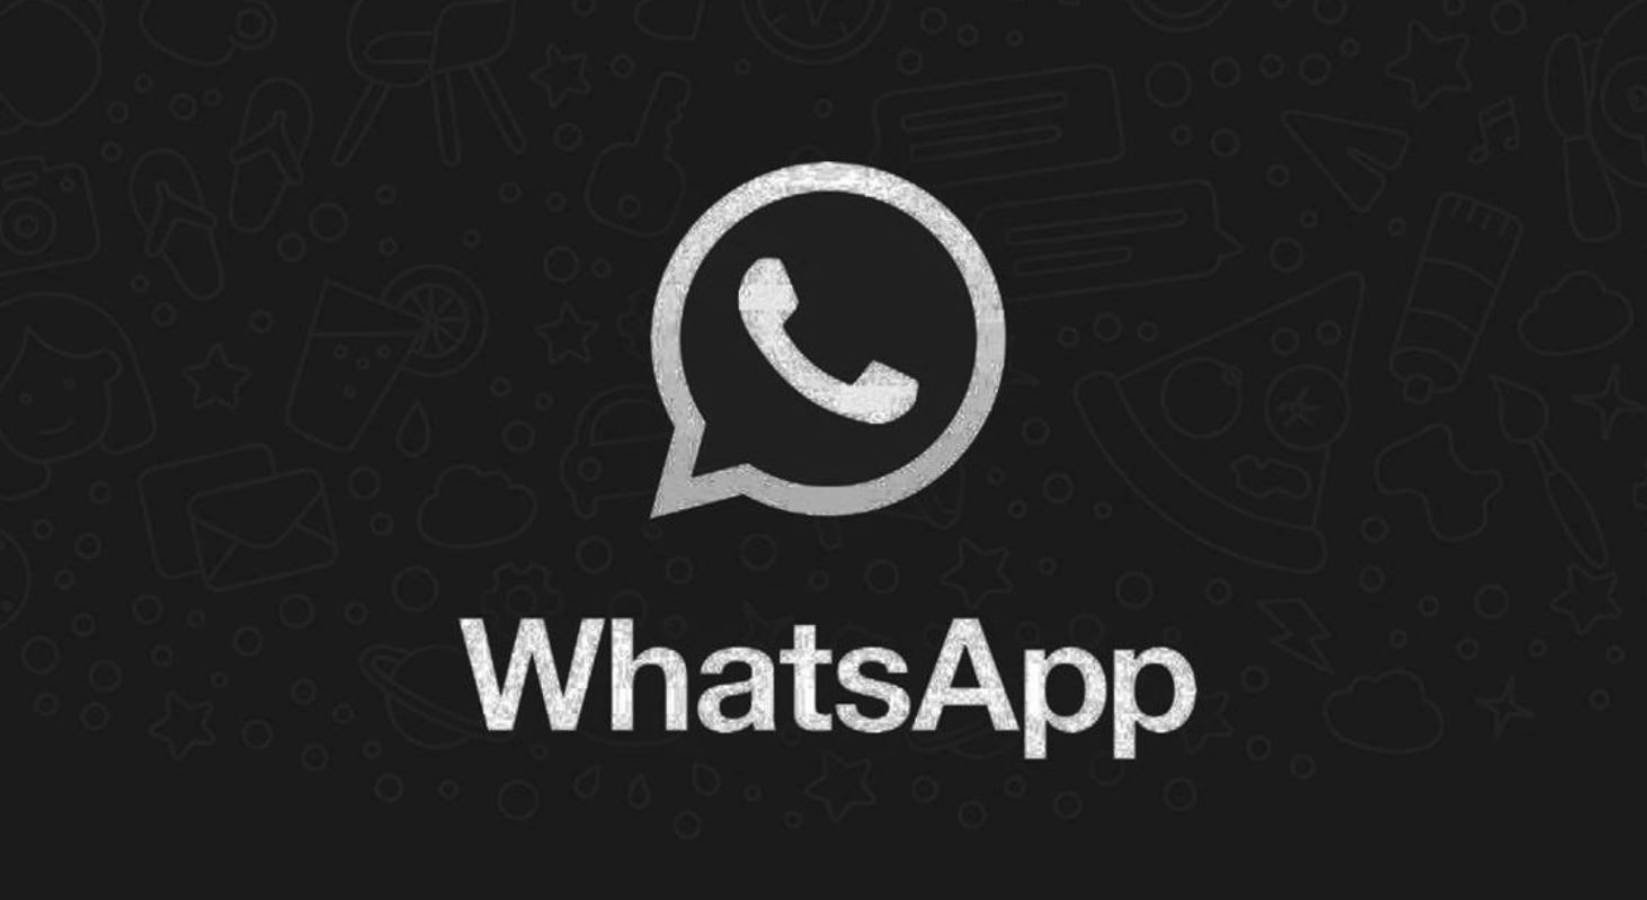 WhatsApp diferente dark mode